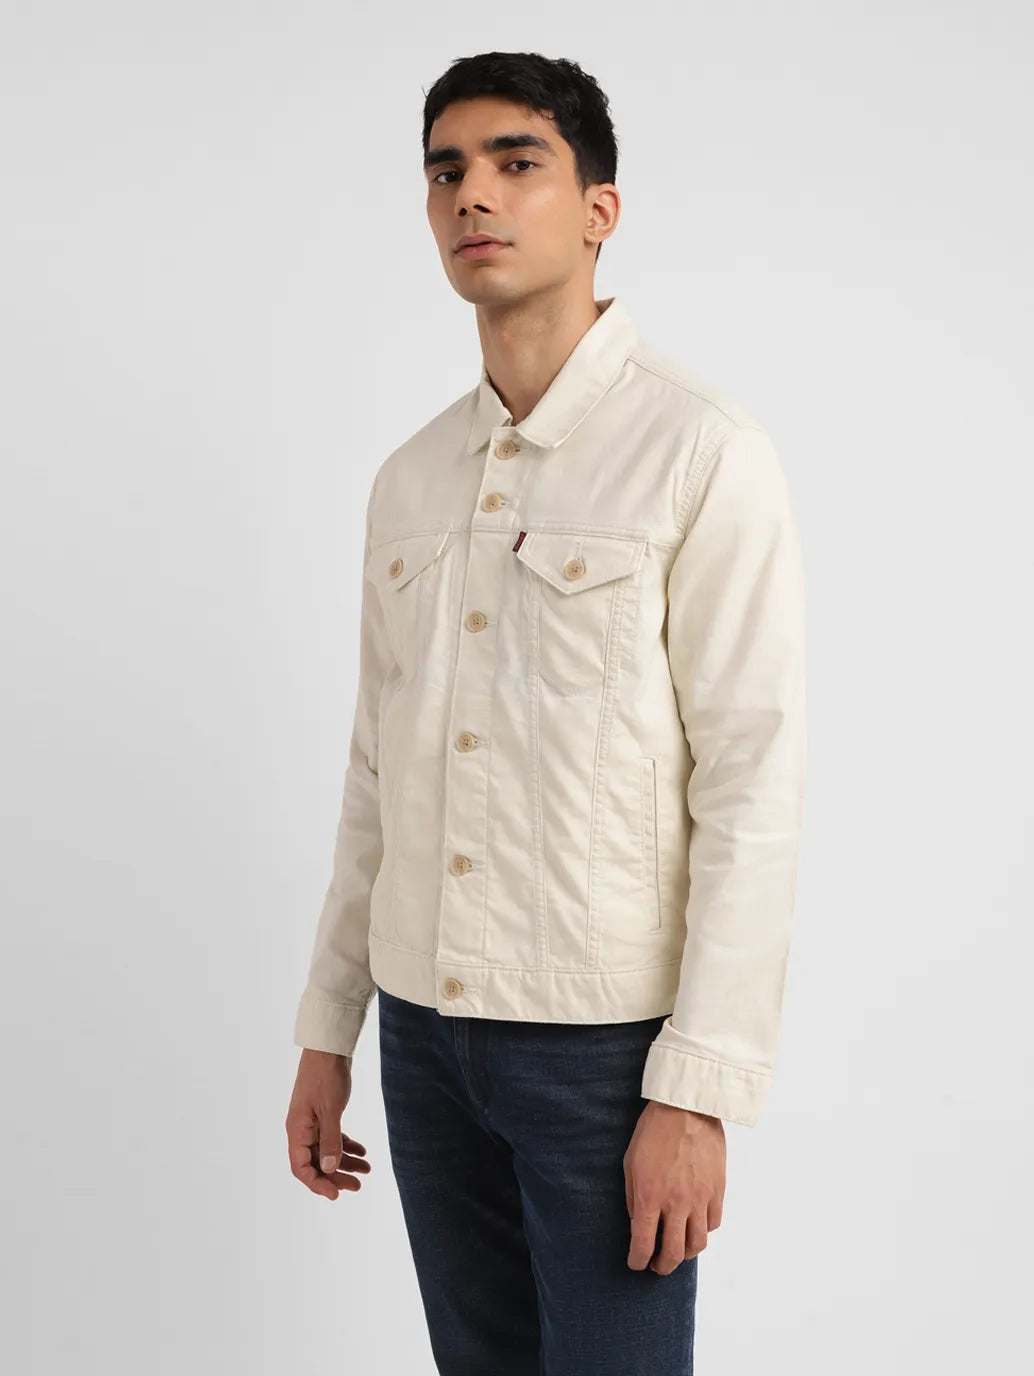 Men's Solid Cream Spread Collar Jacket